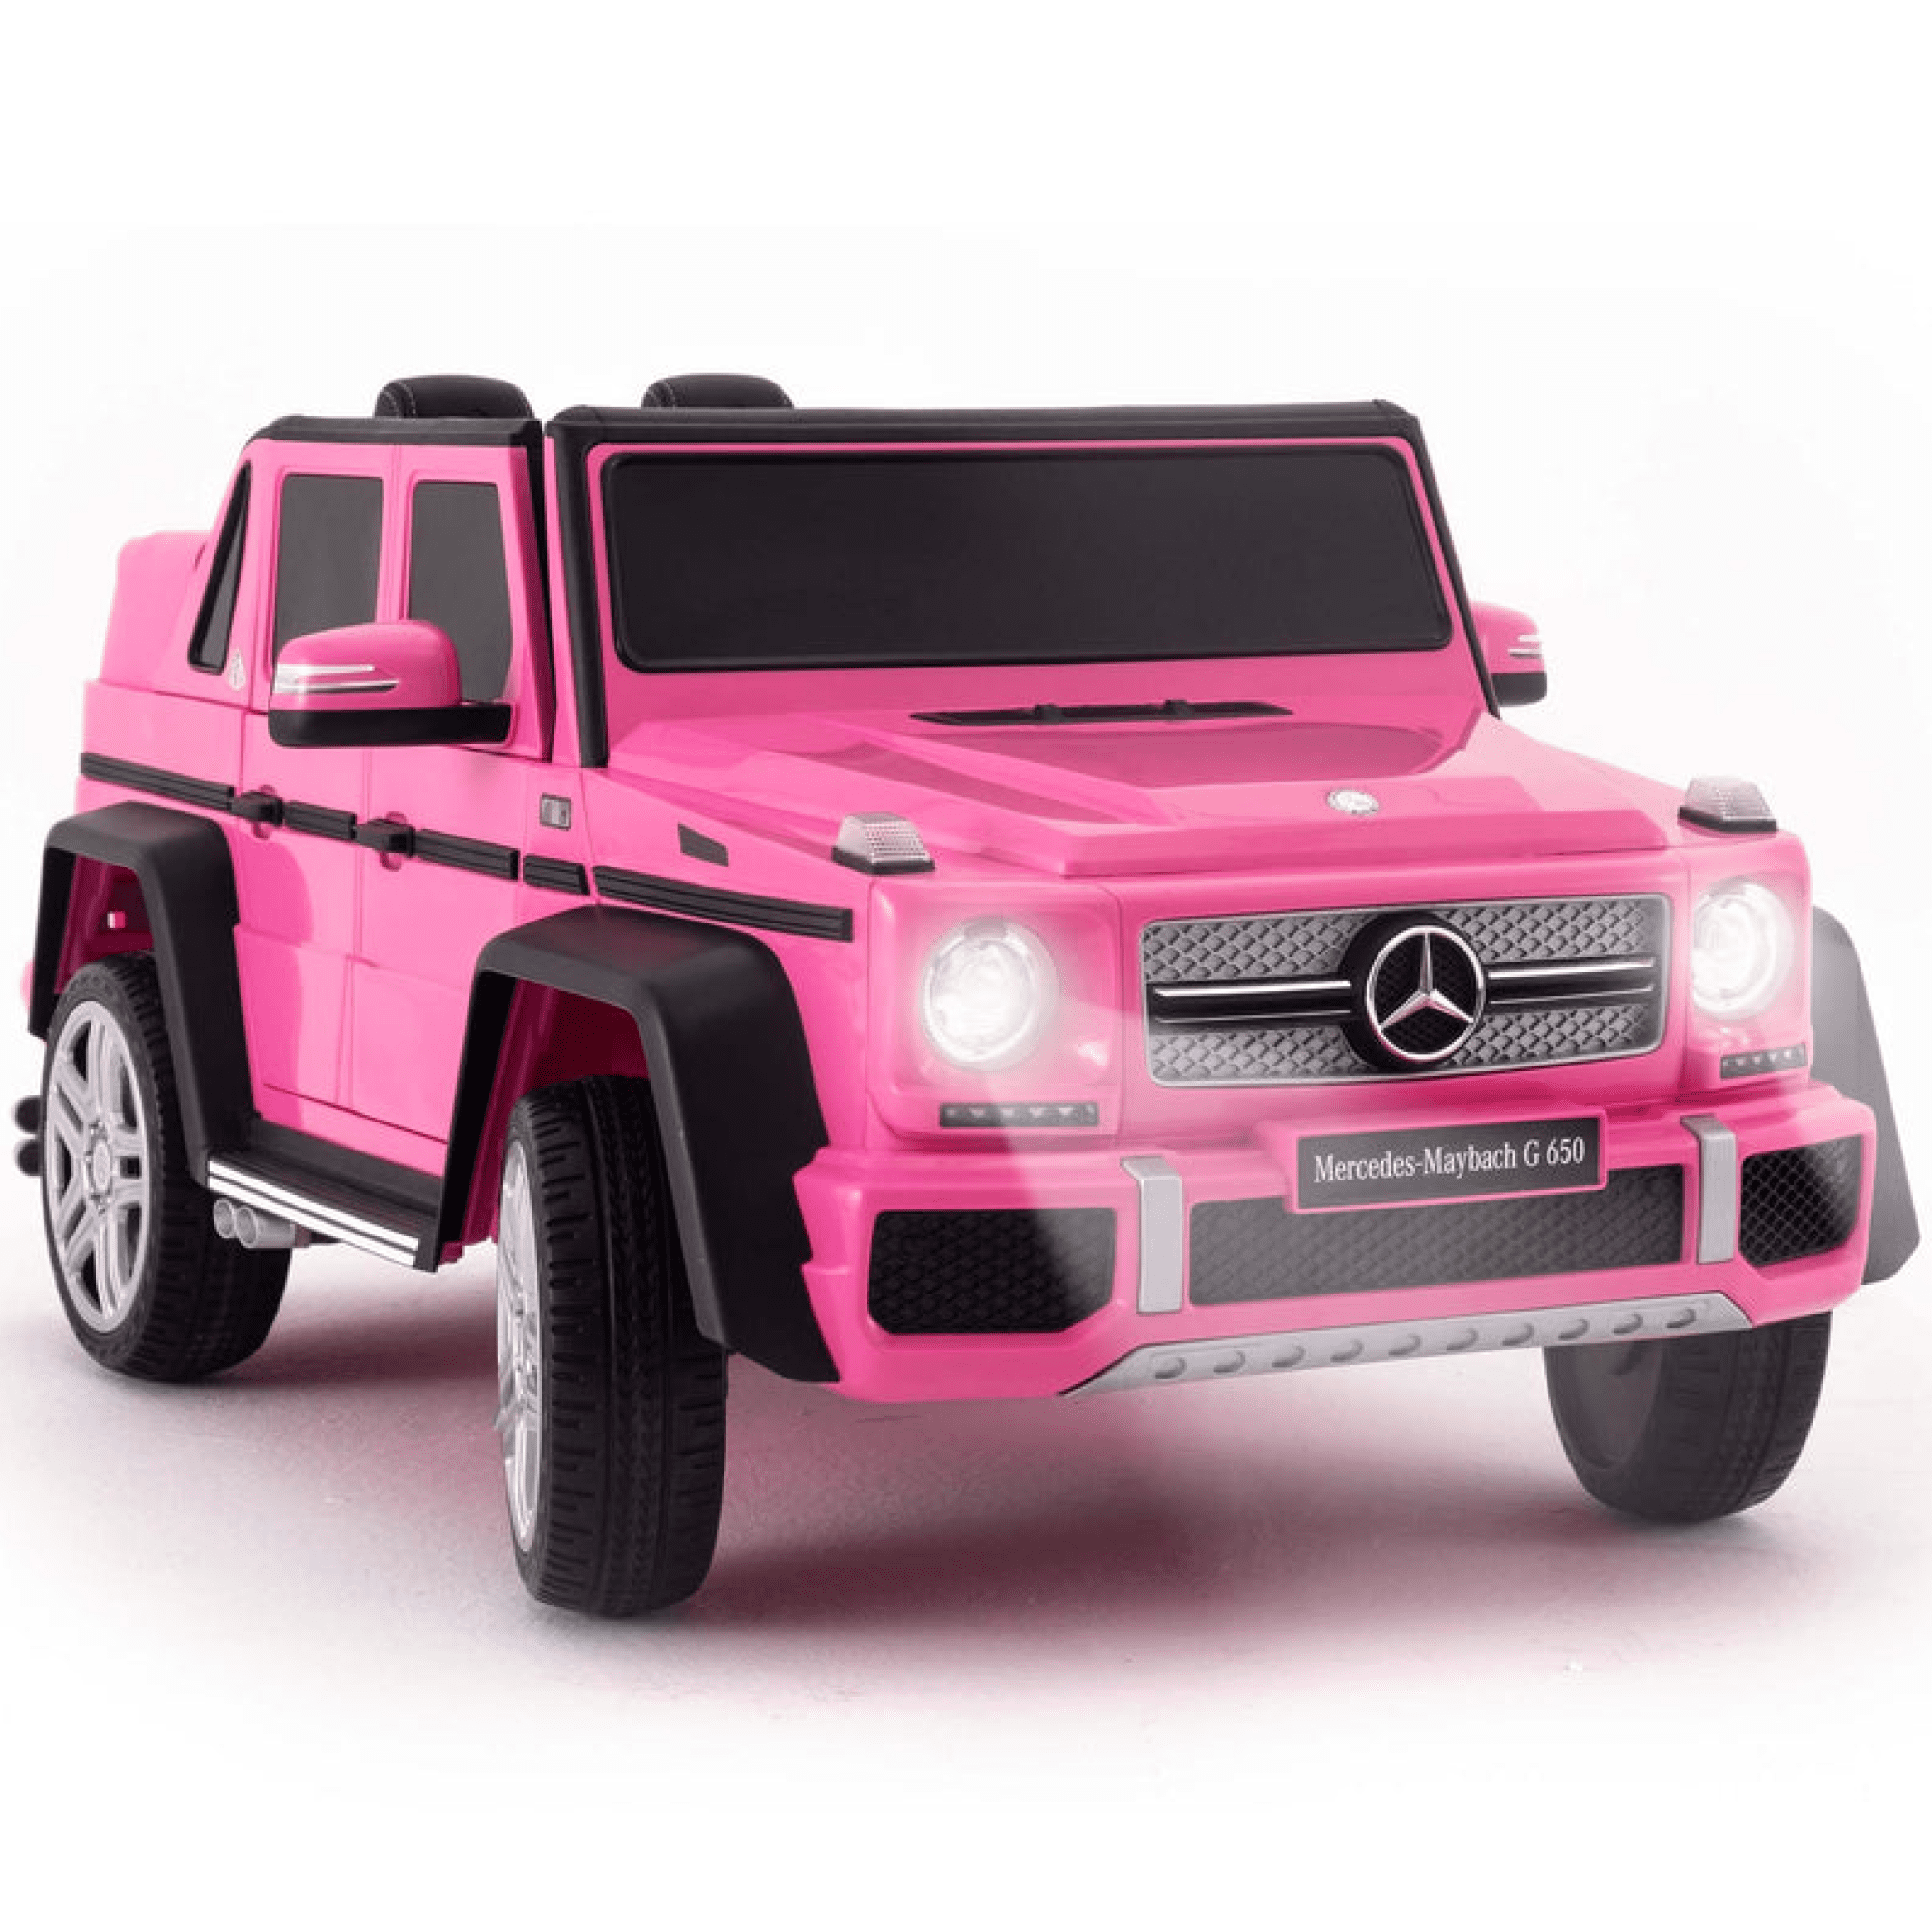 12V Kids 4 Speeds Mercedes Benz Pink Ride On Car LED Lights Remote Control MP3 